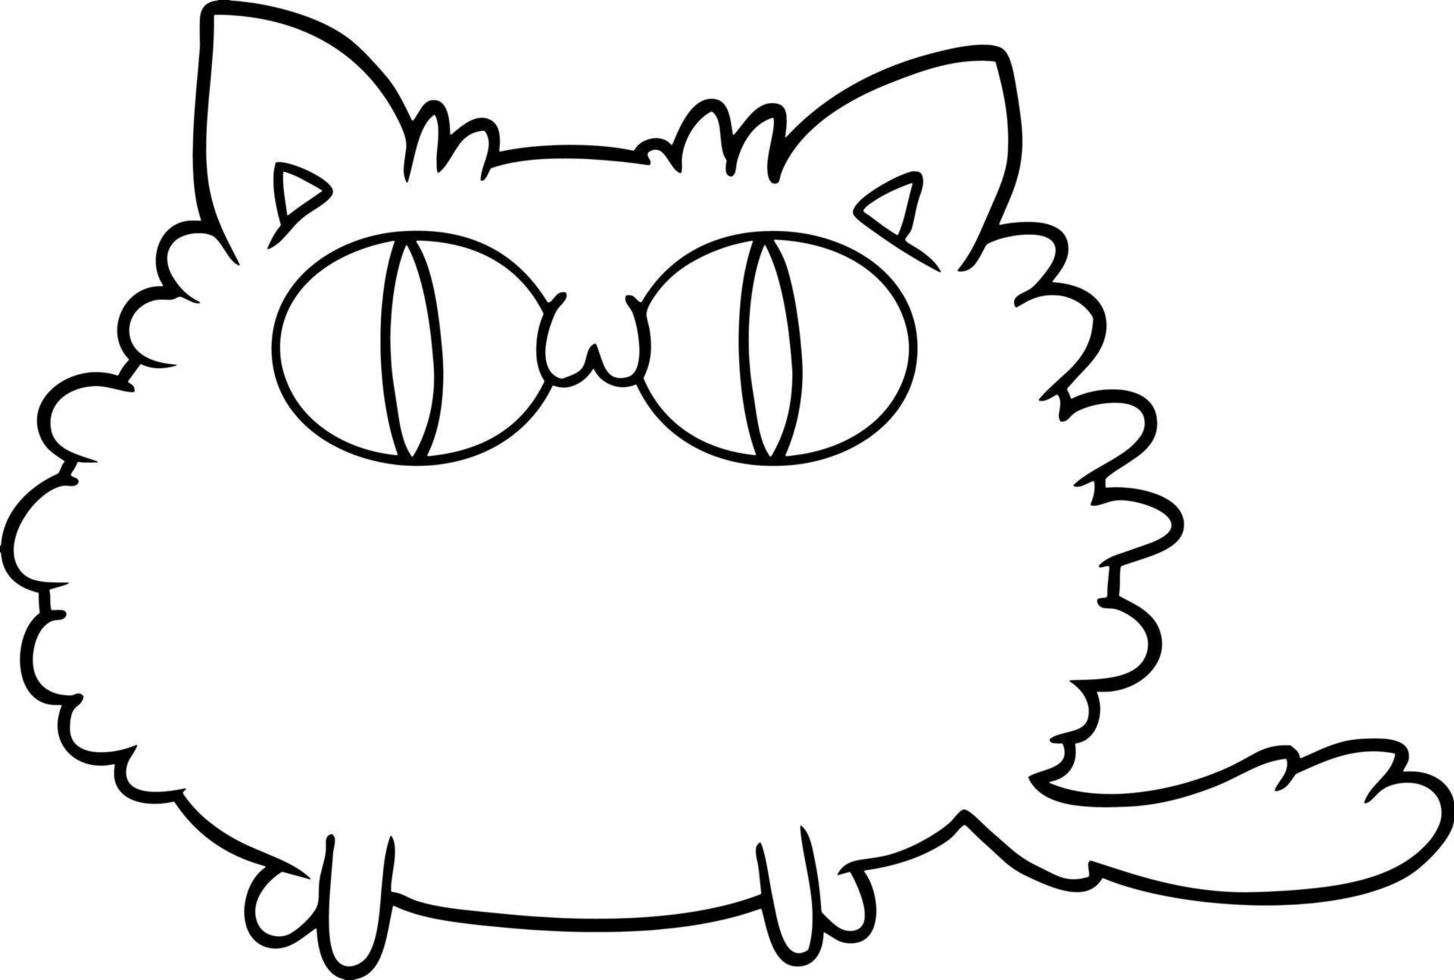 personnage de chat de dessin animé vecteur